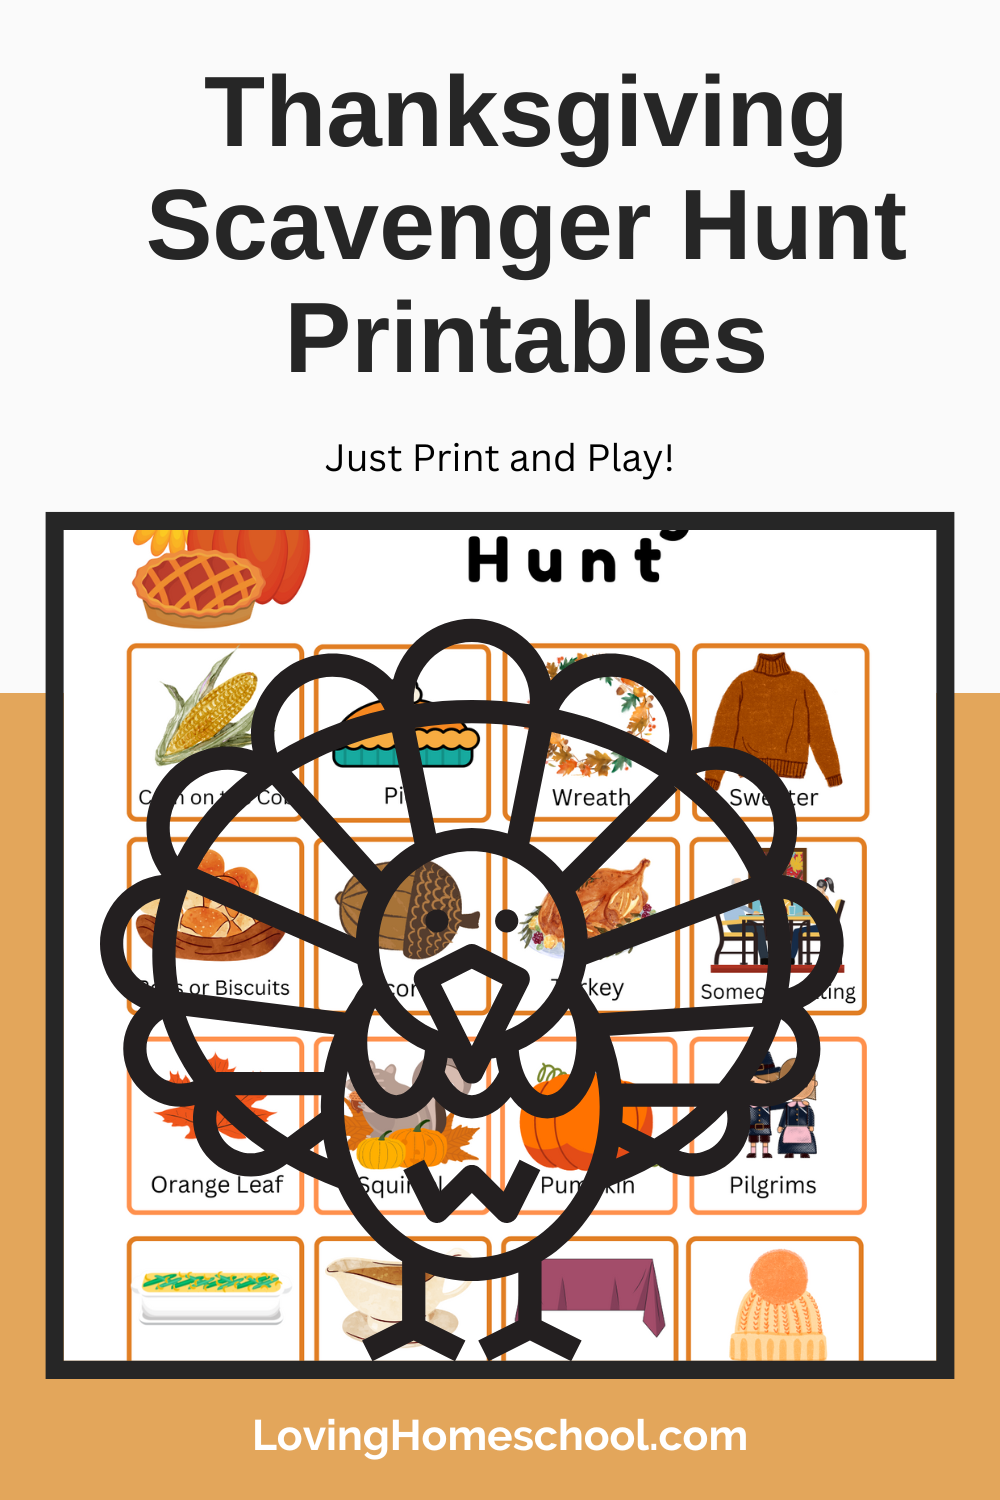 Thanksgiving Scavenger Hunt Printables Pinterest Pin